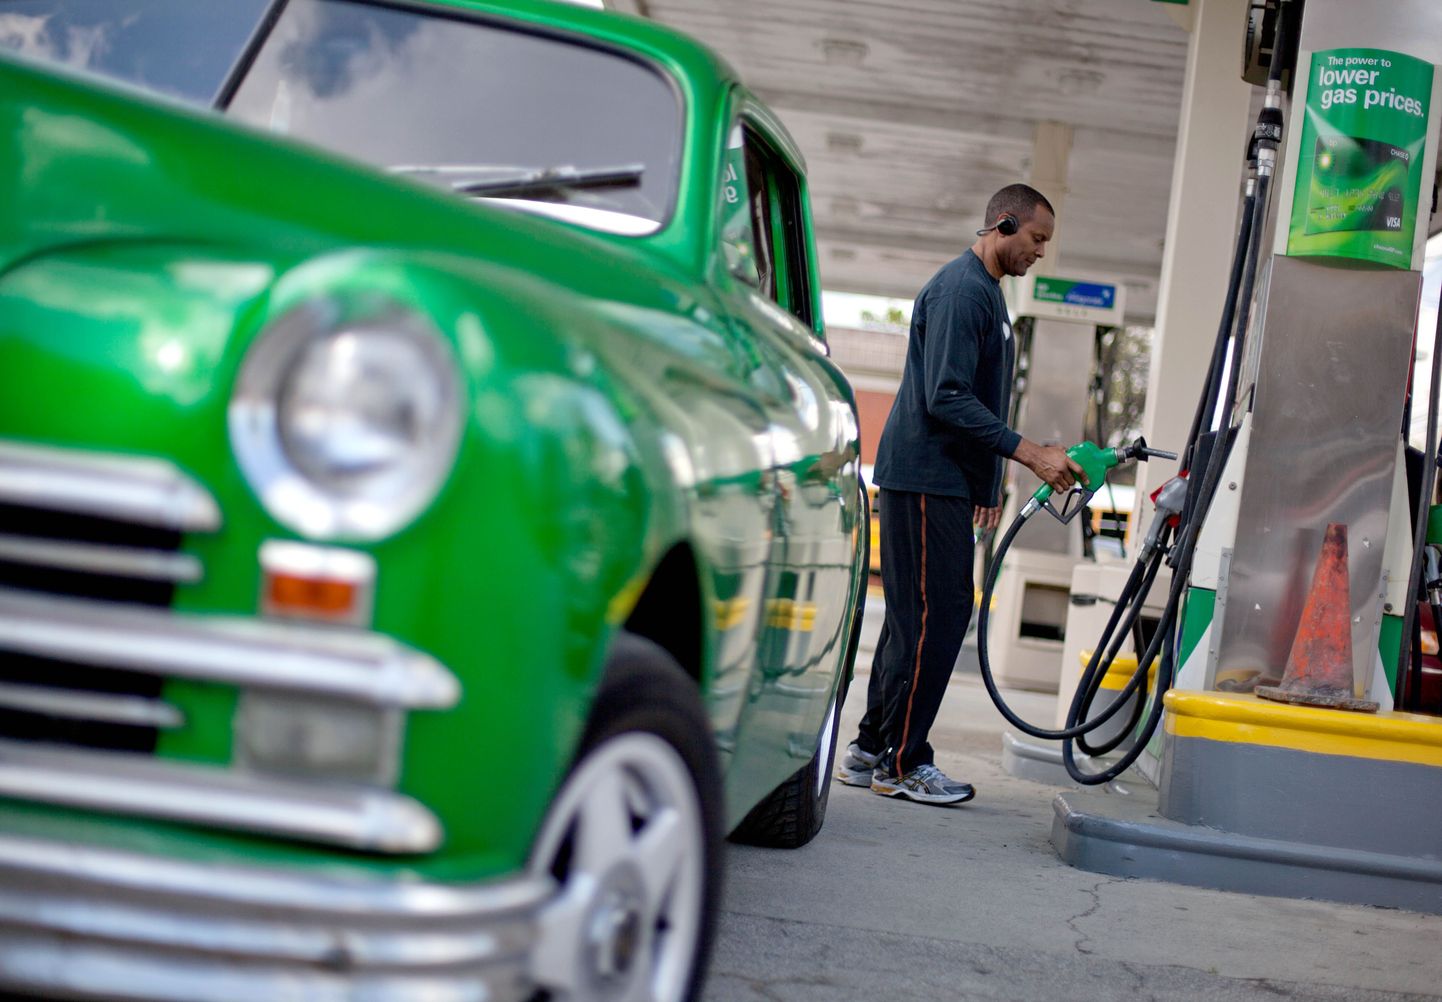 Briti bensiinimüüjad süüdistavad valitsust kütusekriisi tekitamises